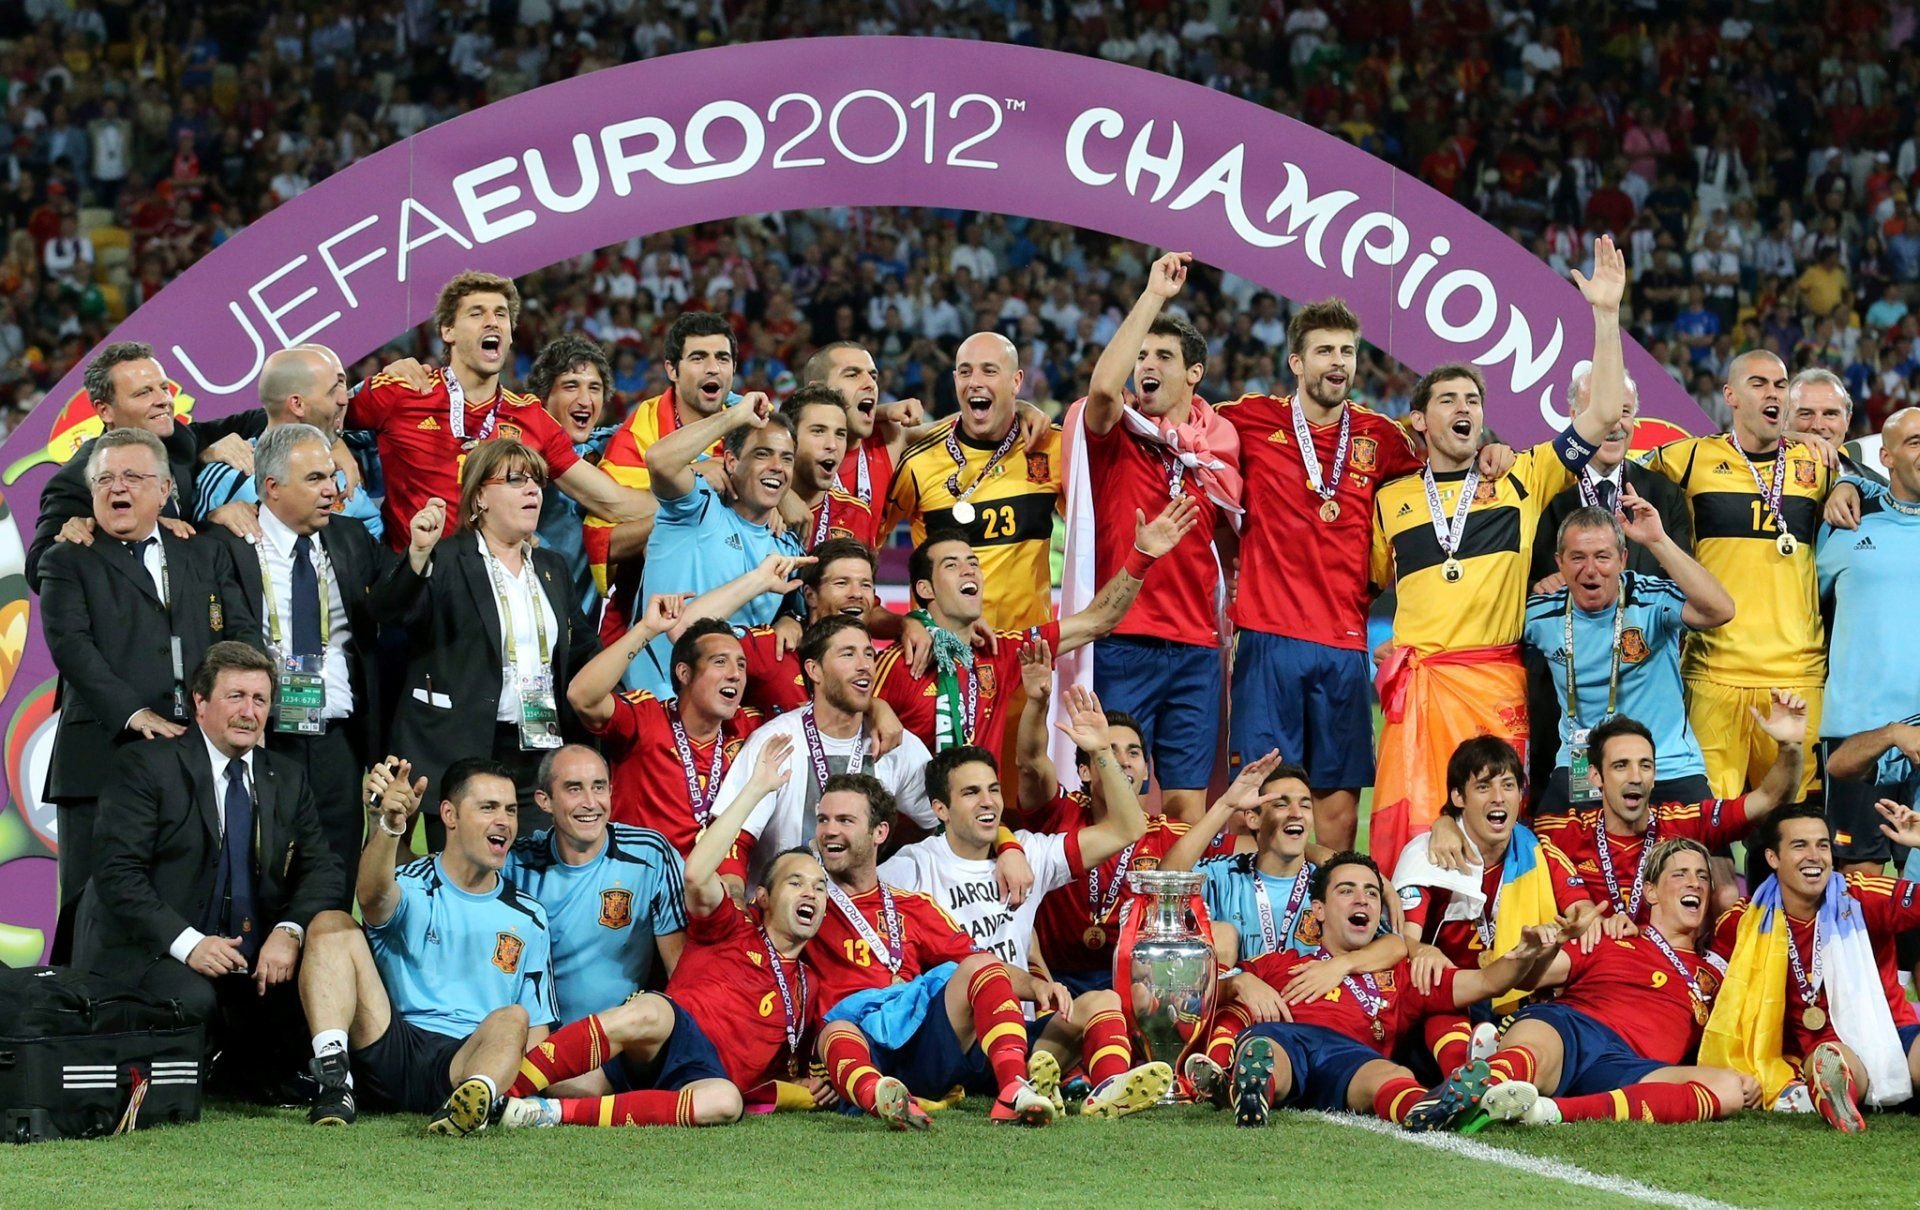 Сборная Испании чемпион Европы 2008. Евро 2012 чемпионы. Сборная Испании чемпионы. Сборная испании по футболу чемпионы